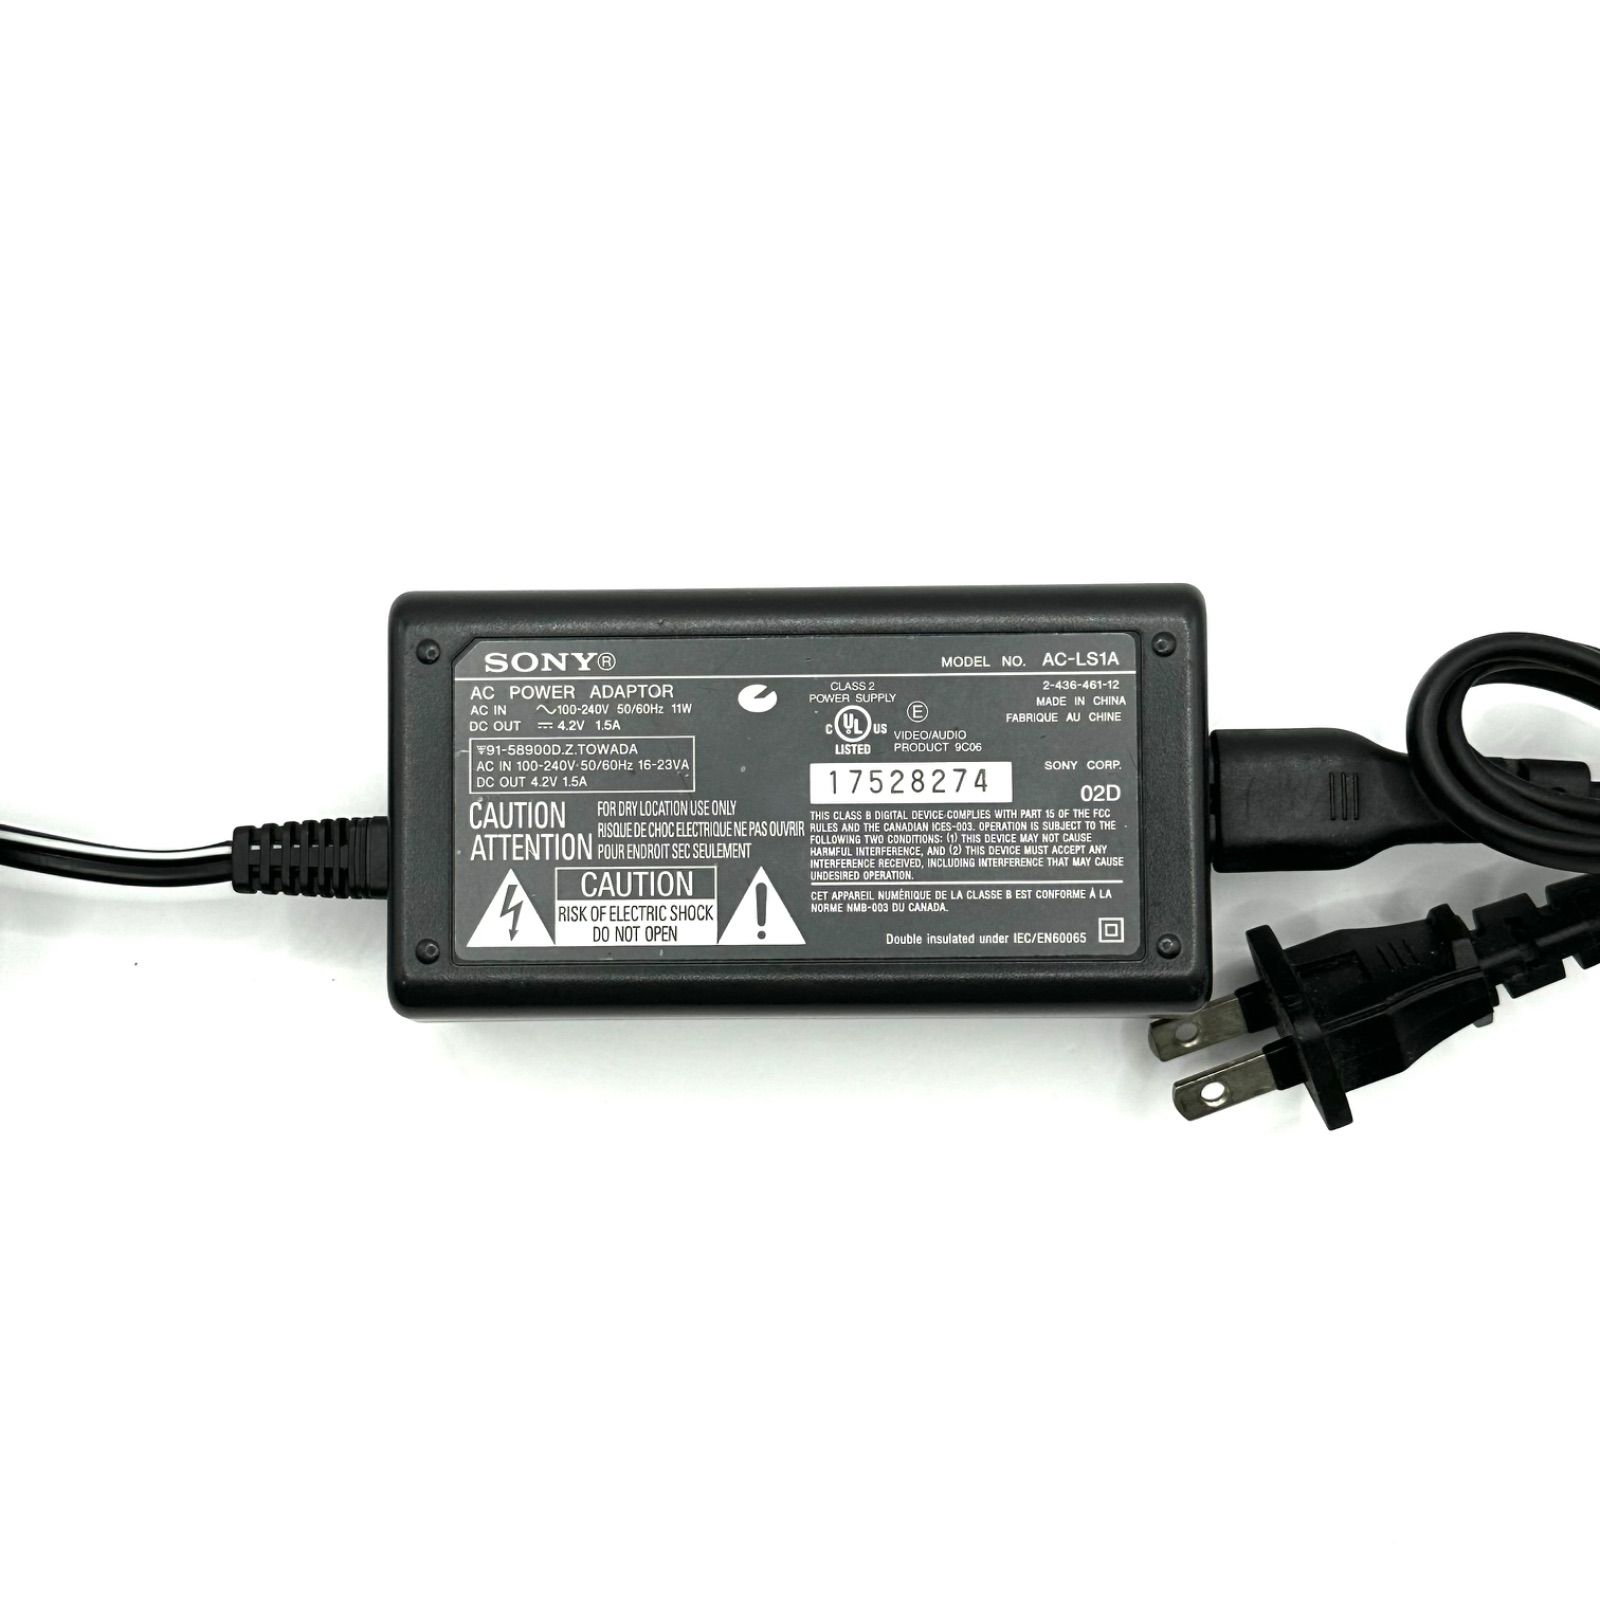 AC-LS1A ソニー SONY カメラ デジタルカメラ デジカメ サイバーショット Cyber-shot 電源コード ACアダプター アダプター  電源アダプタ 純正 ACアダプター 1104-1600